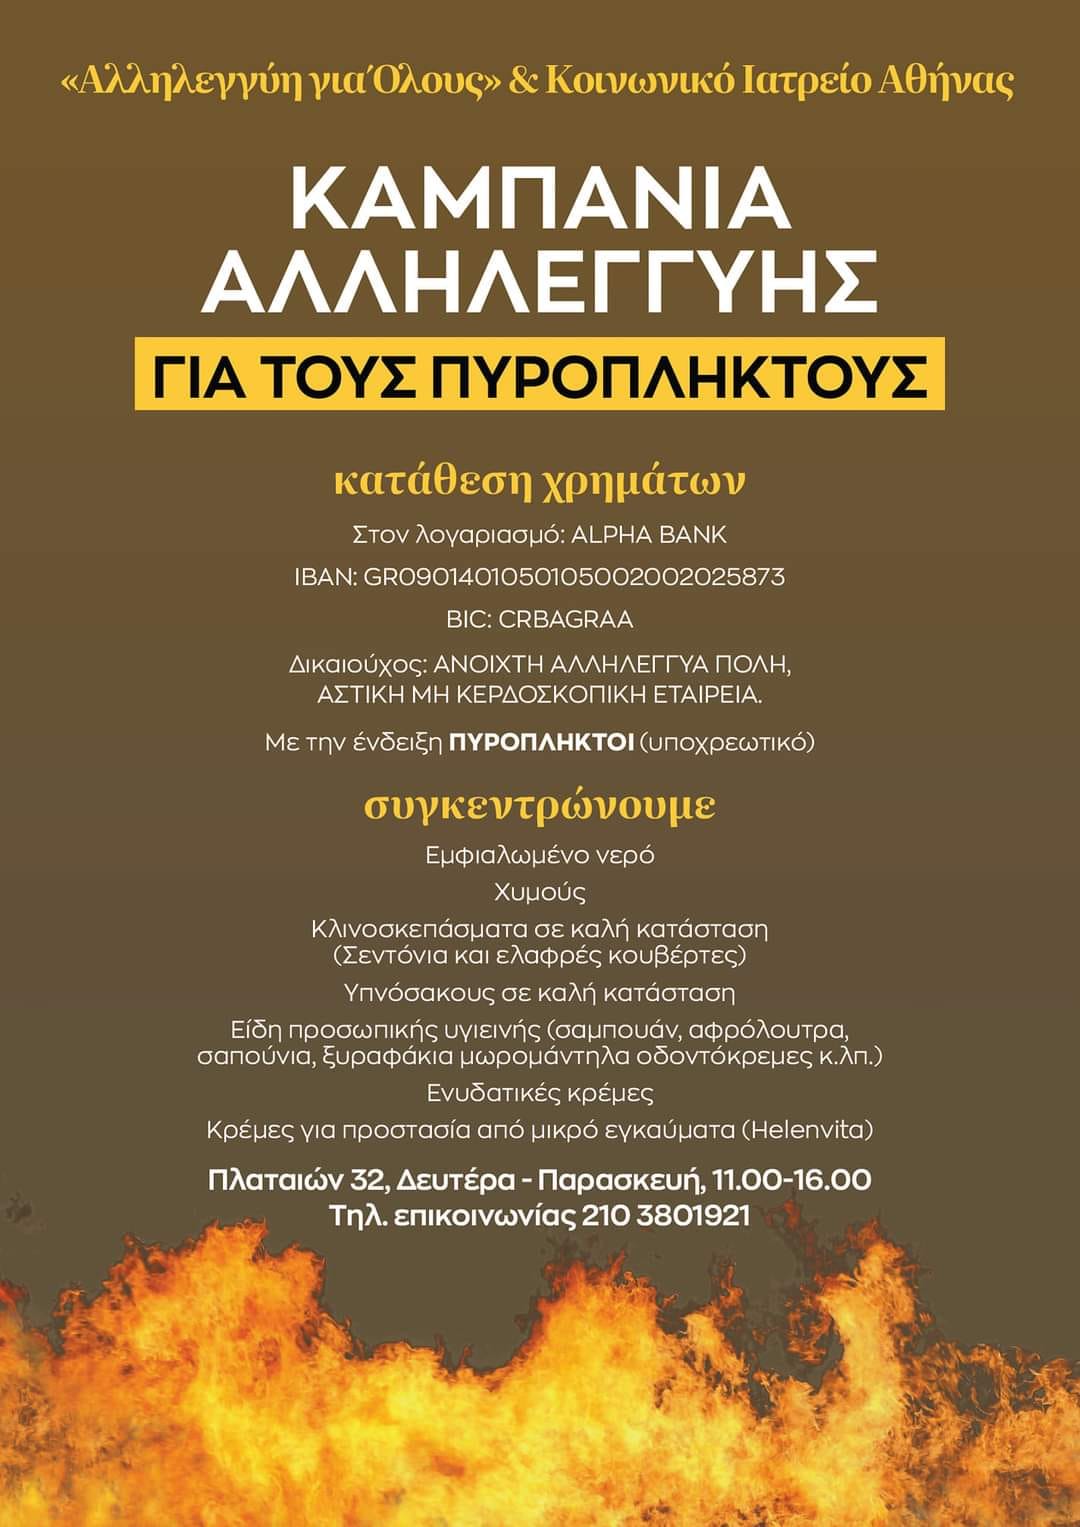  Καμπάνια της «Αλληλεγγύης για Όλους» και του Κοινωνικού Ιατρείου Αθήνας για τους πυρόπληκτους